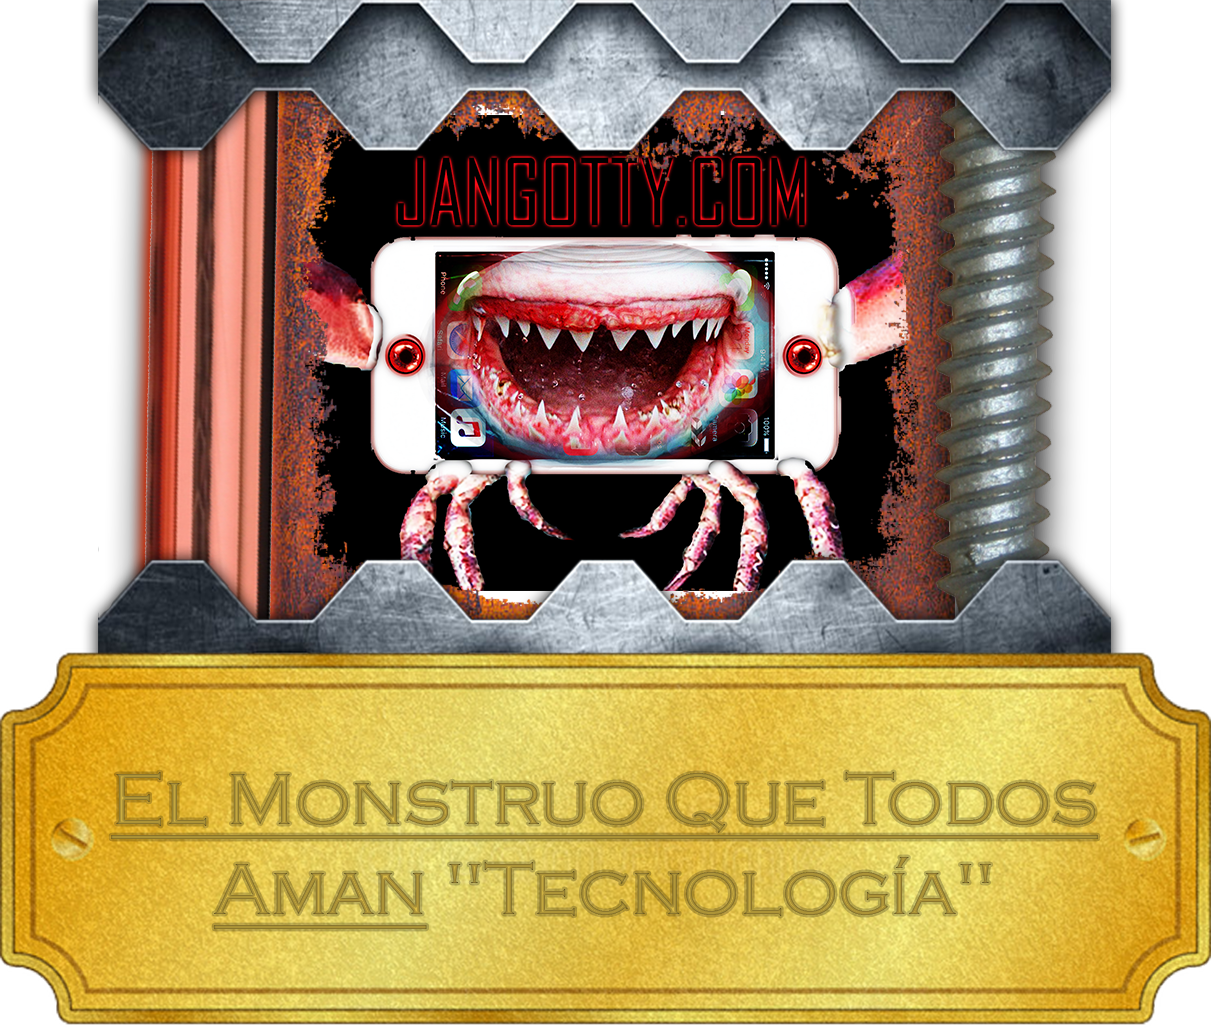 El Monstruo Que Todos Aman "Tecnología"